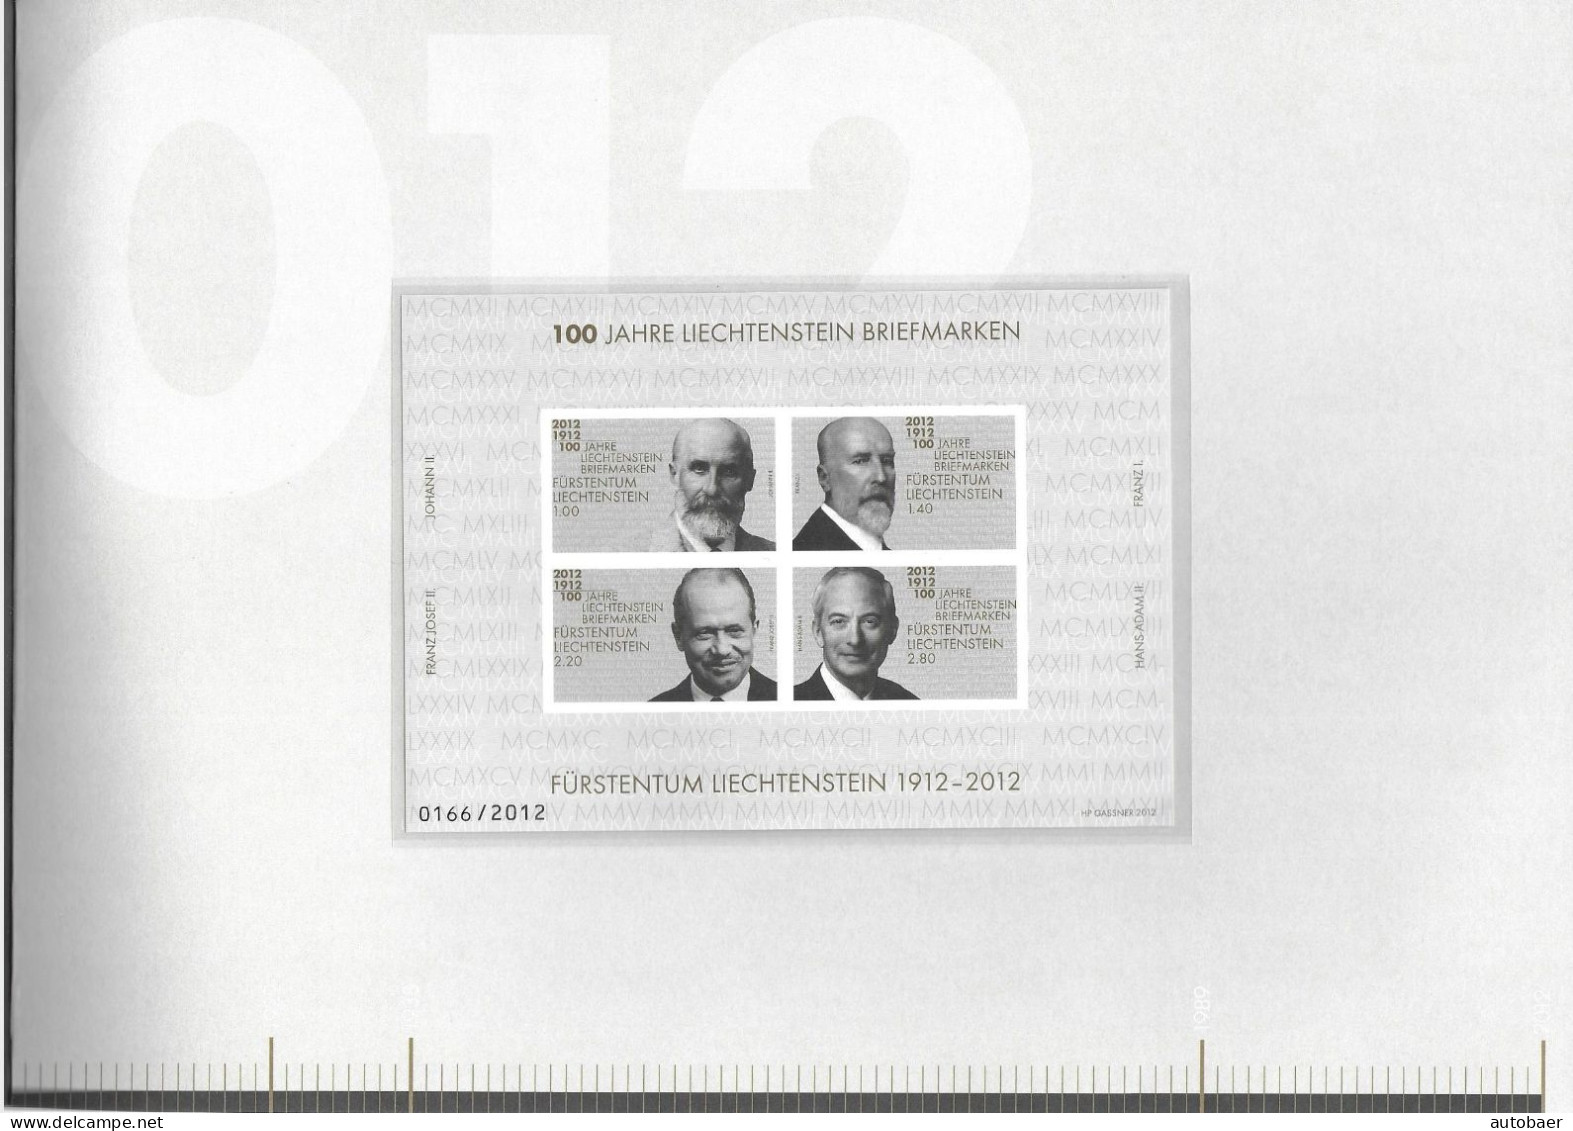 Liechtenstein 2012 100 years stamps 100 Jahre Briefmarken Mi. 1618-21 Bl. 21 im Buch siehe Beschreibung Folder